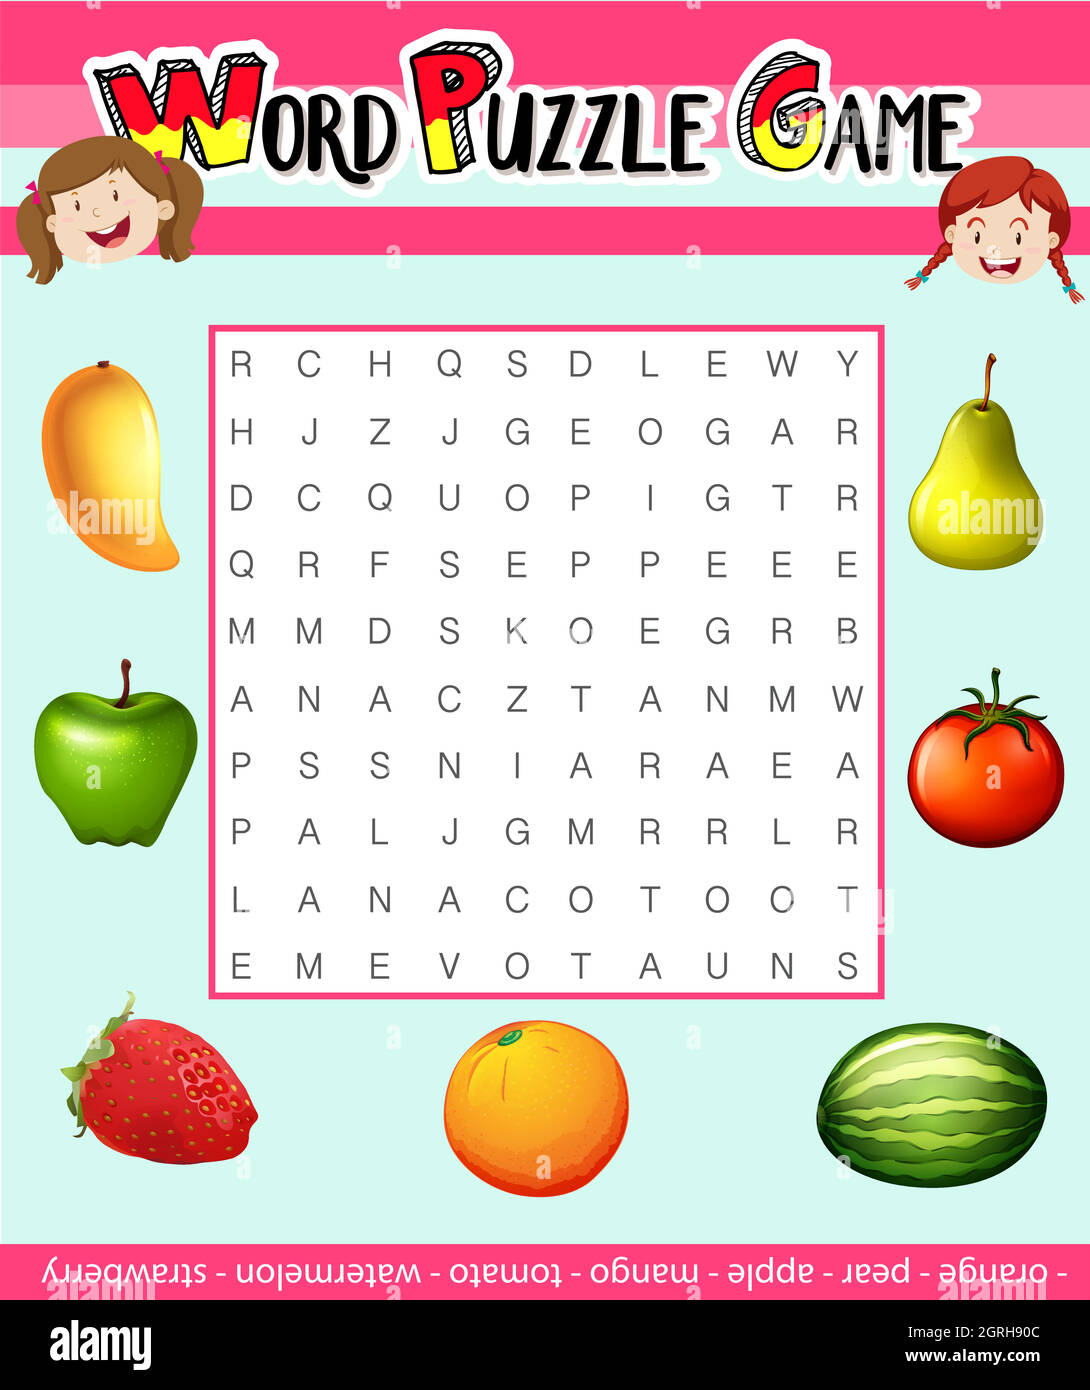 Word Puzzle-Spiel Vorlage mit Obst-Thema Stock-Vektorgrafik - Alamy